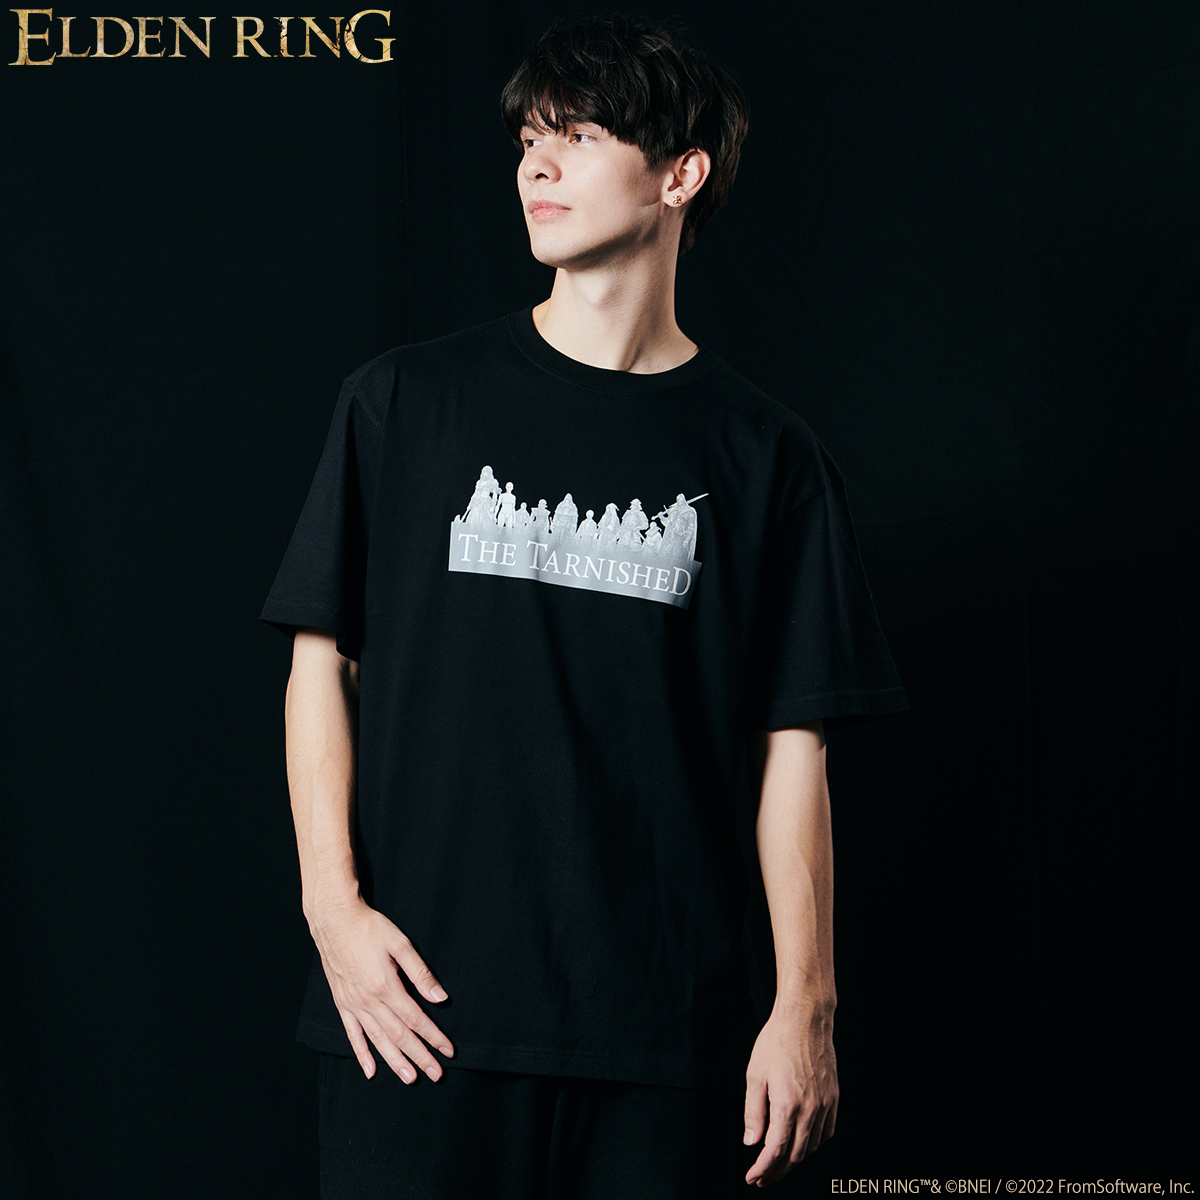 『エルデンリング』のダークな世界を表現したアパレルコレクションが登場_001